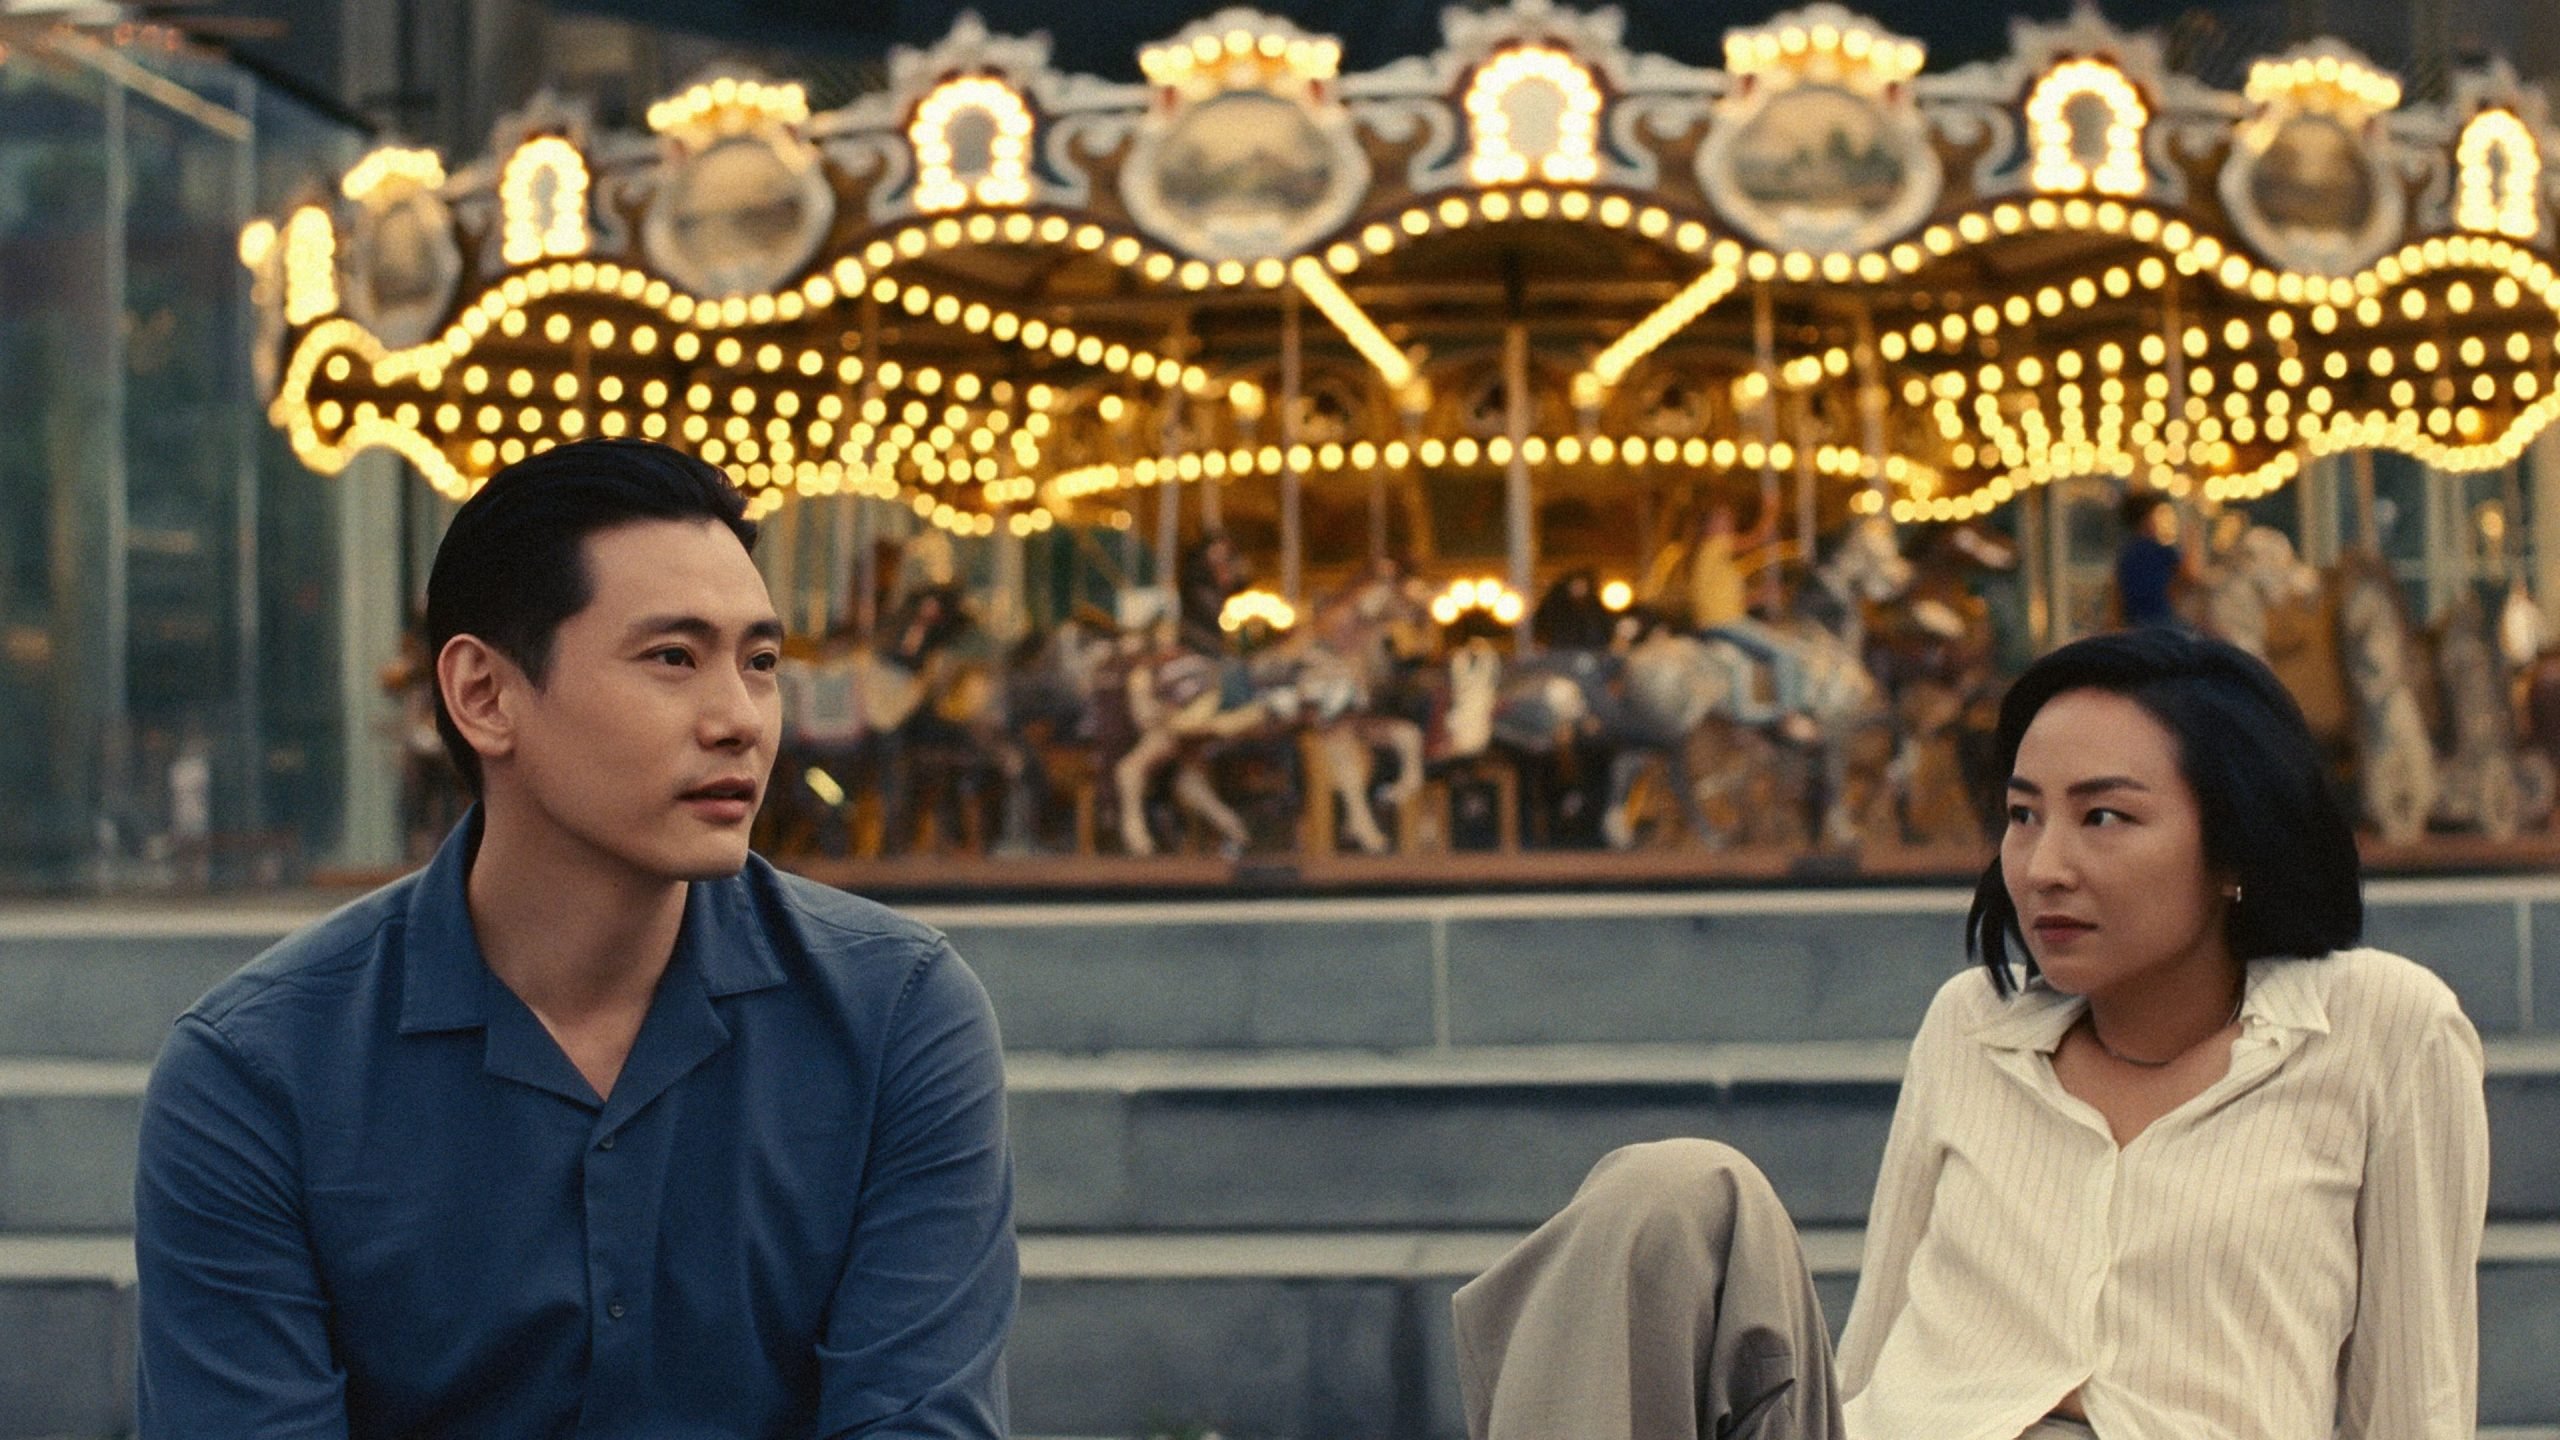 Em seu filme, diretora Celine Song conduz com maestria silêncios, olhares e hesitações em história sobre duas pessoas e uma paixão perdida